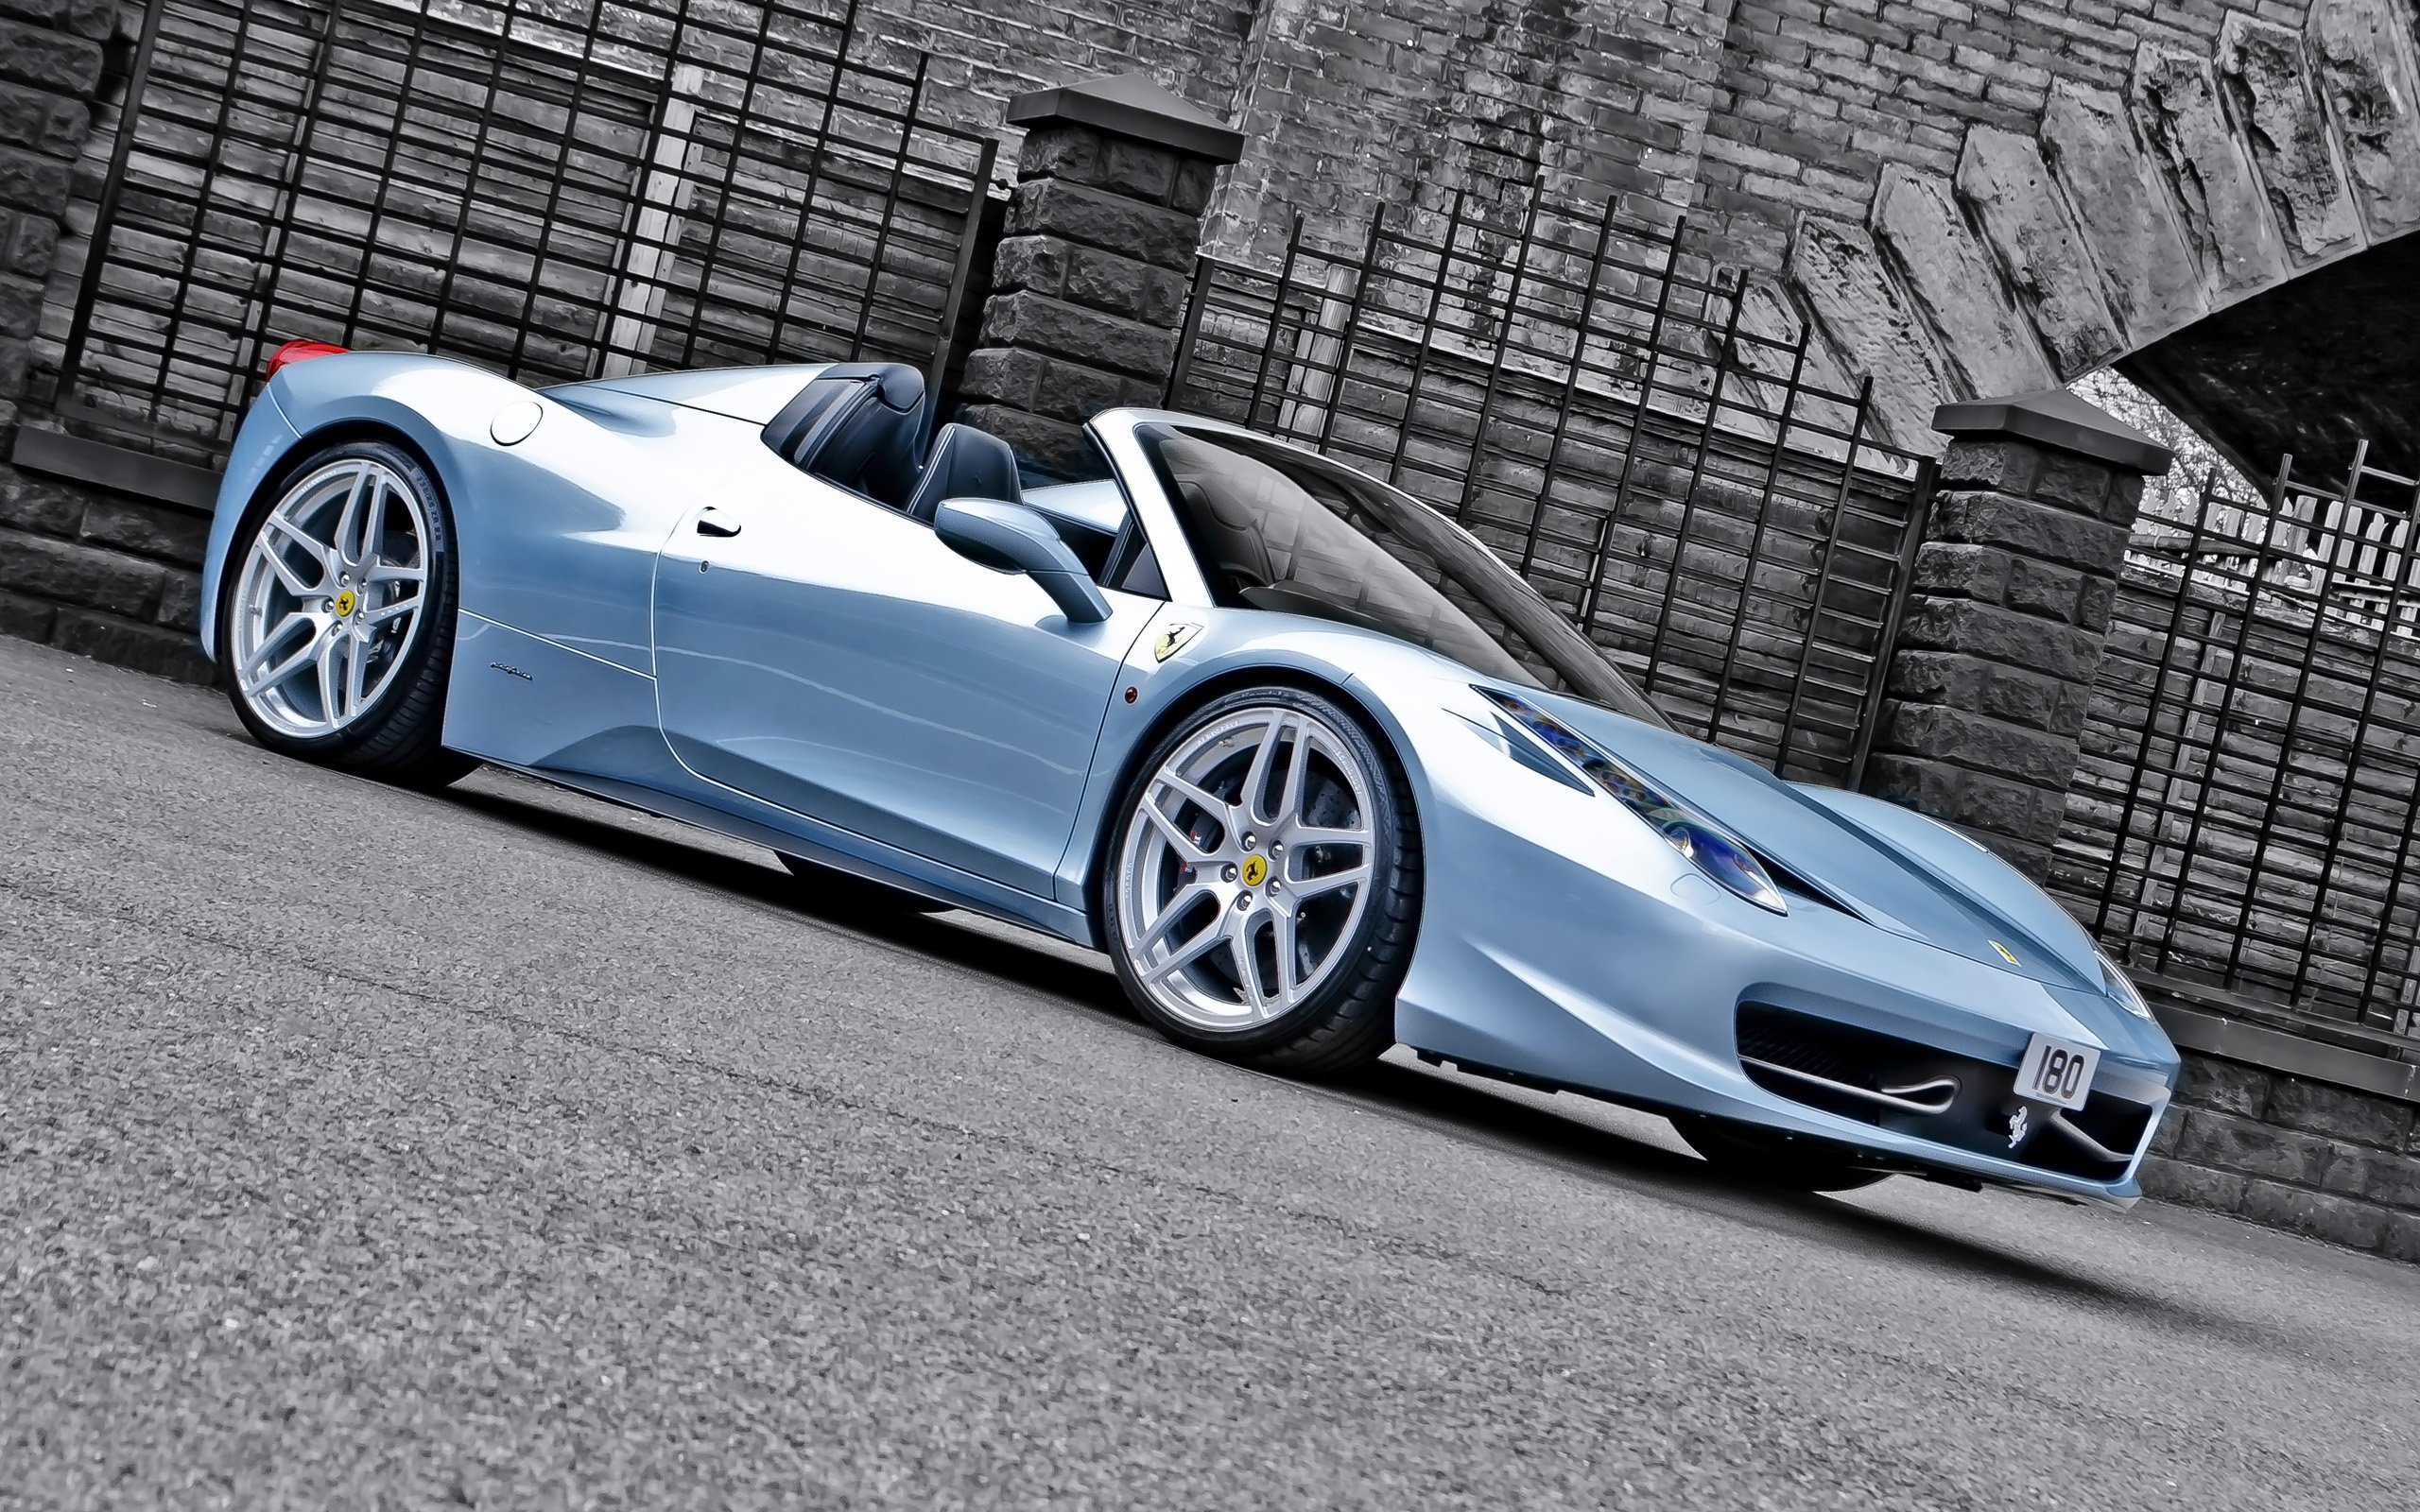 2013, A kahn design, Ferrari, 458, Spider, Blue, Supercar, Fs Wallpaper